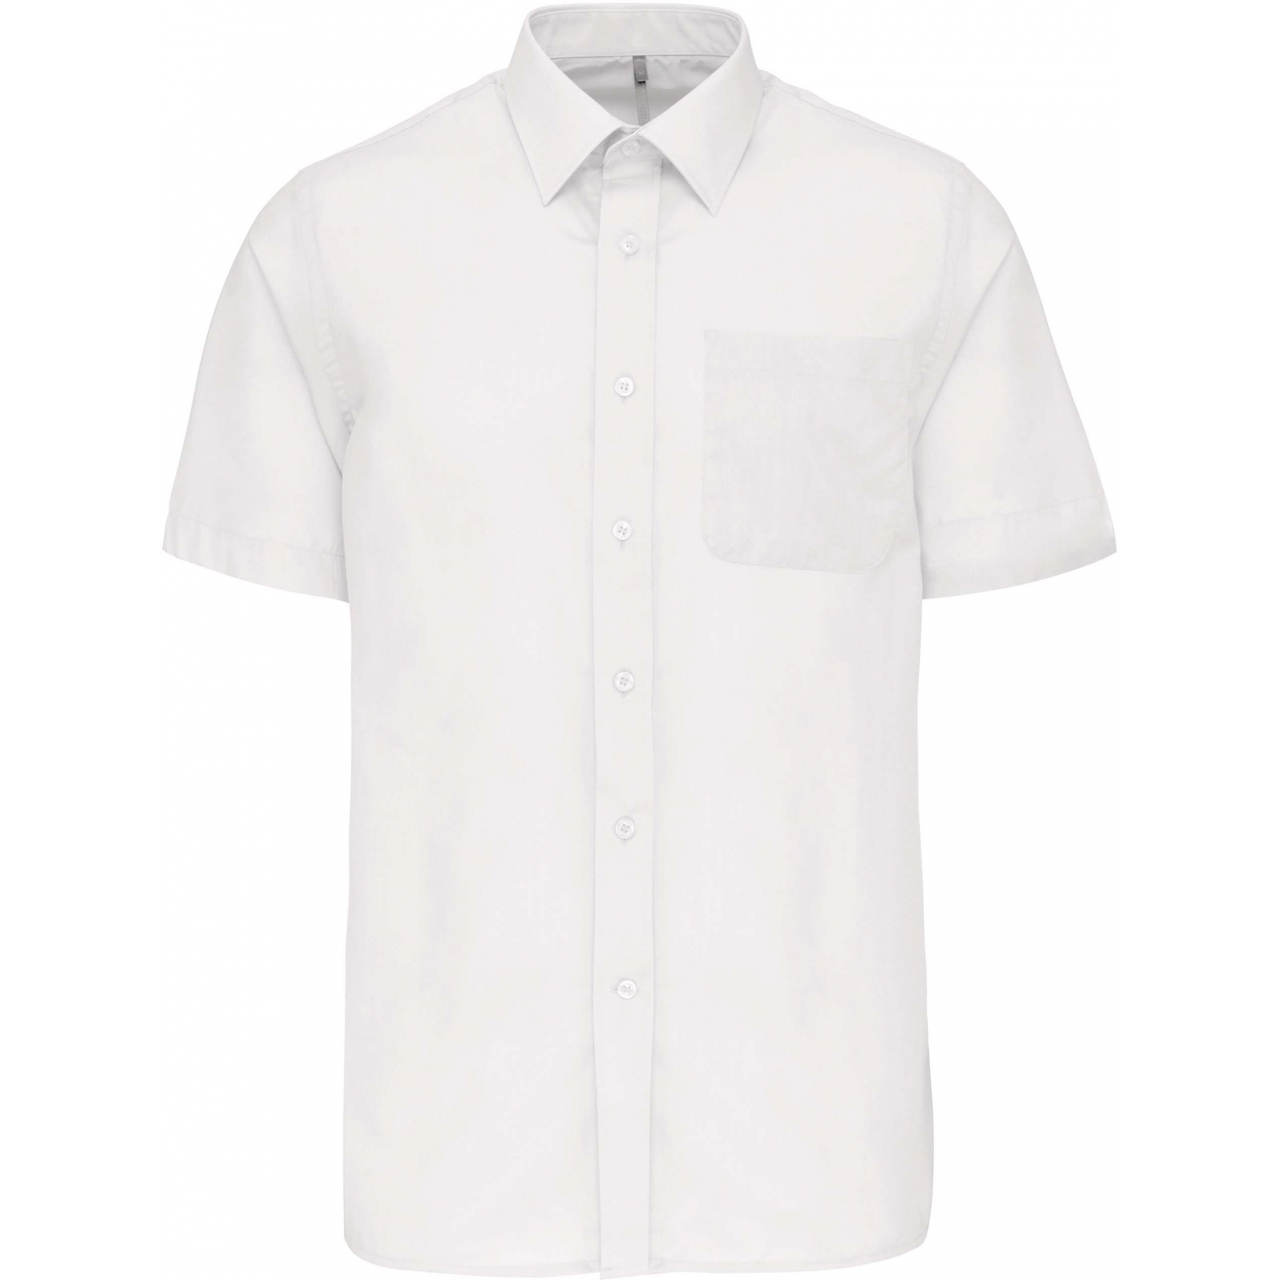 Pánská košile s krátkým rukávem Kariban ACE - bílá, XL